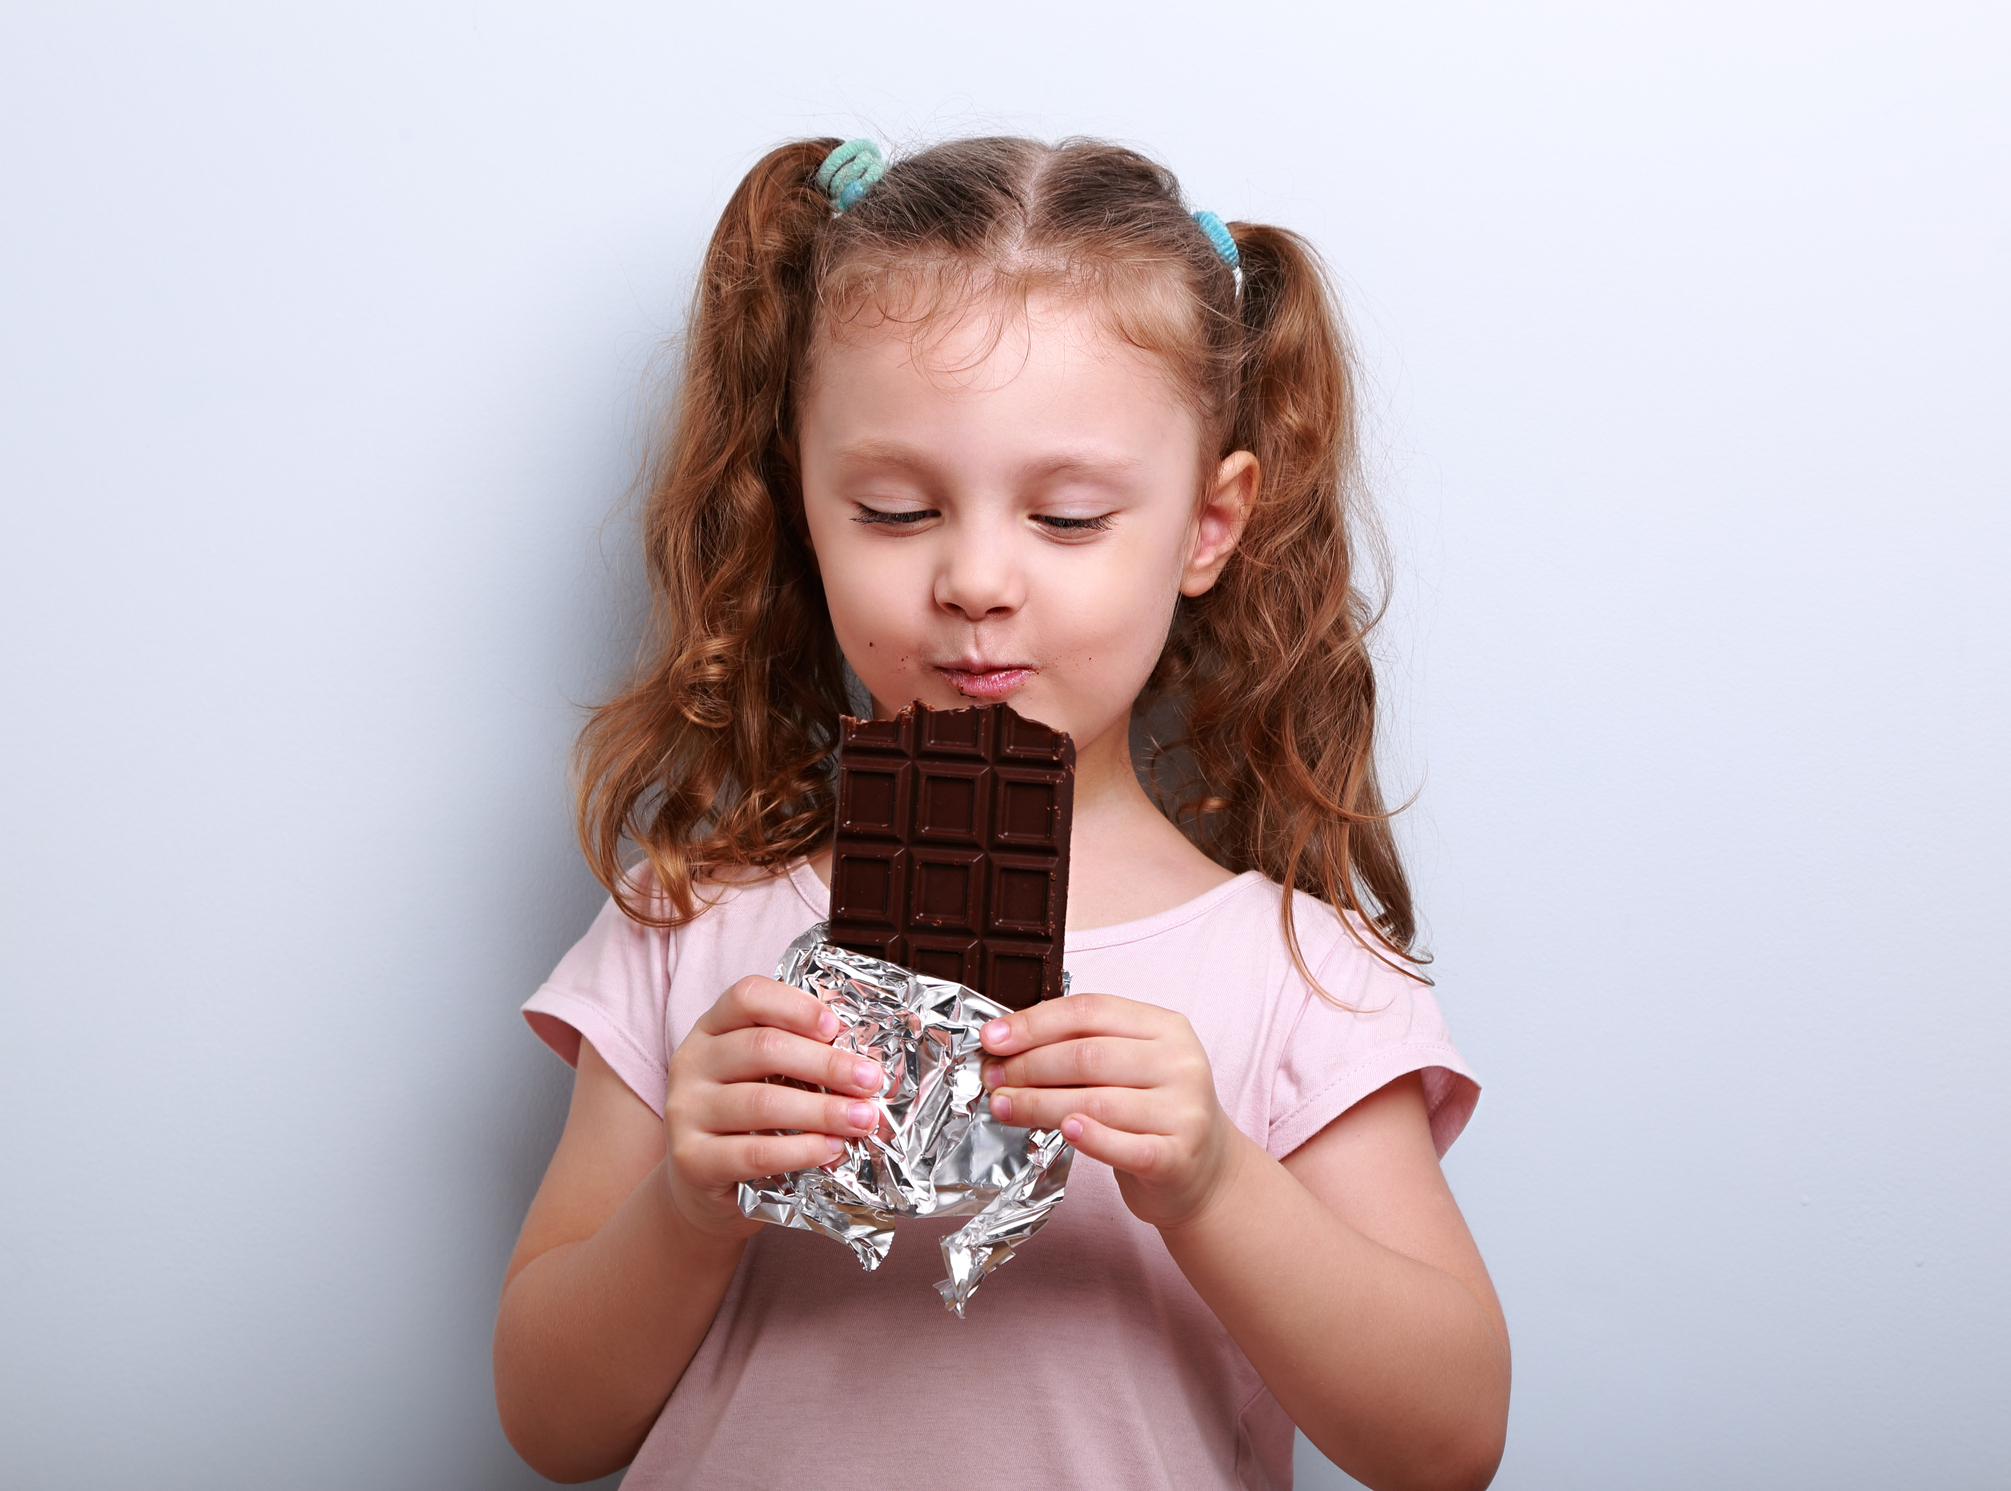 Comer chocolate pode fazer bem à saúde